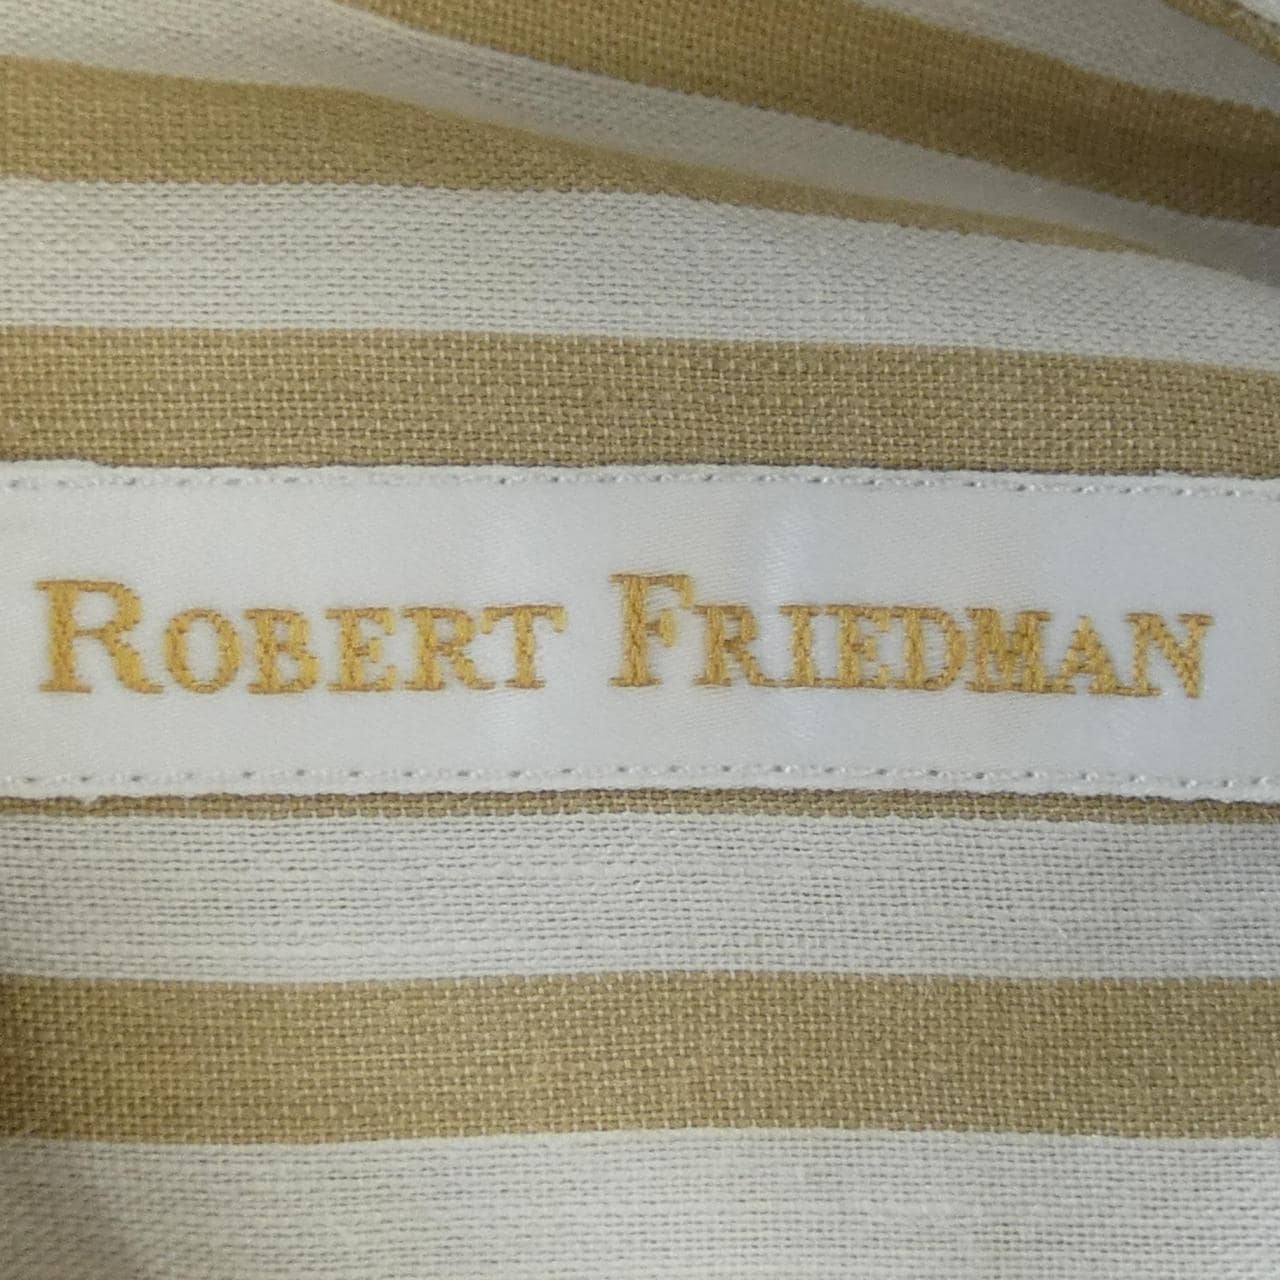 ROBERT FRIEDMAN シャツ